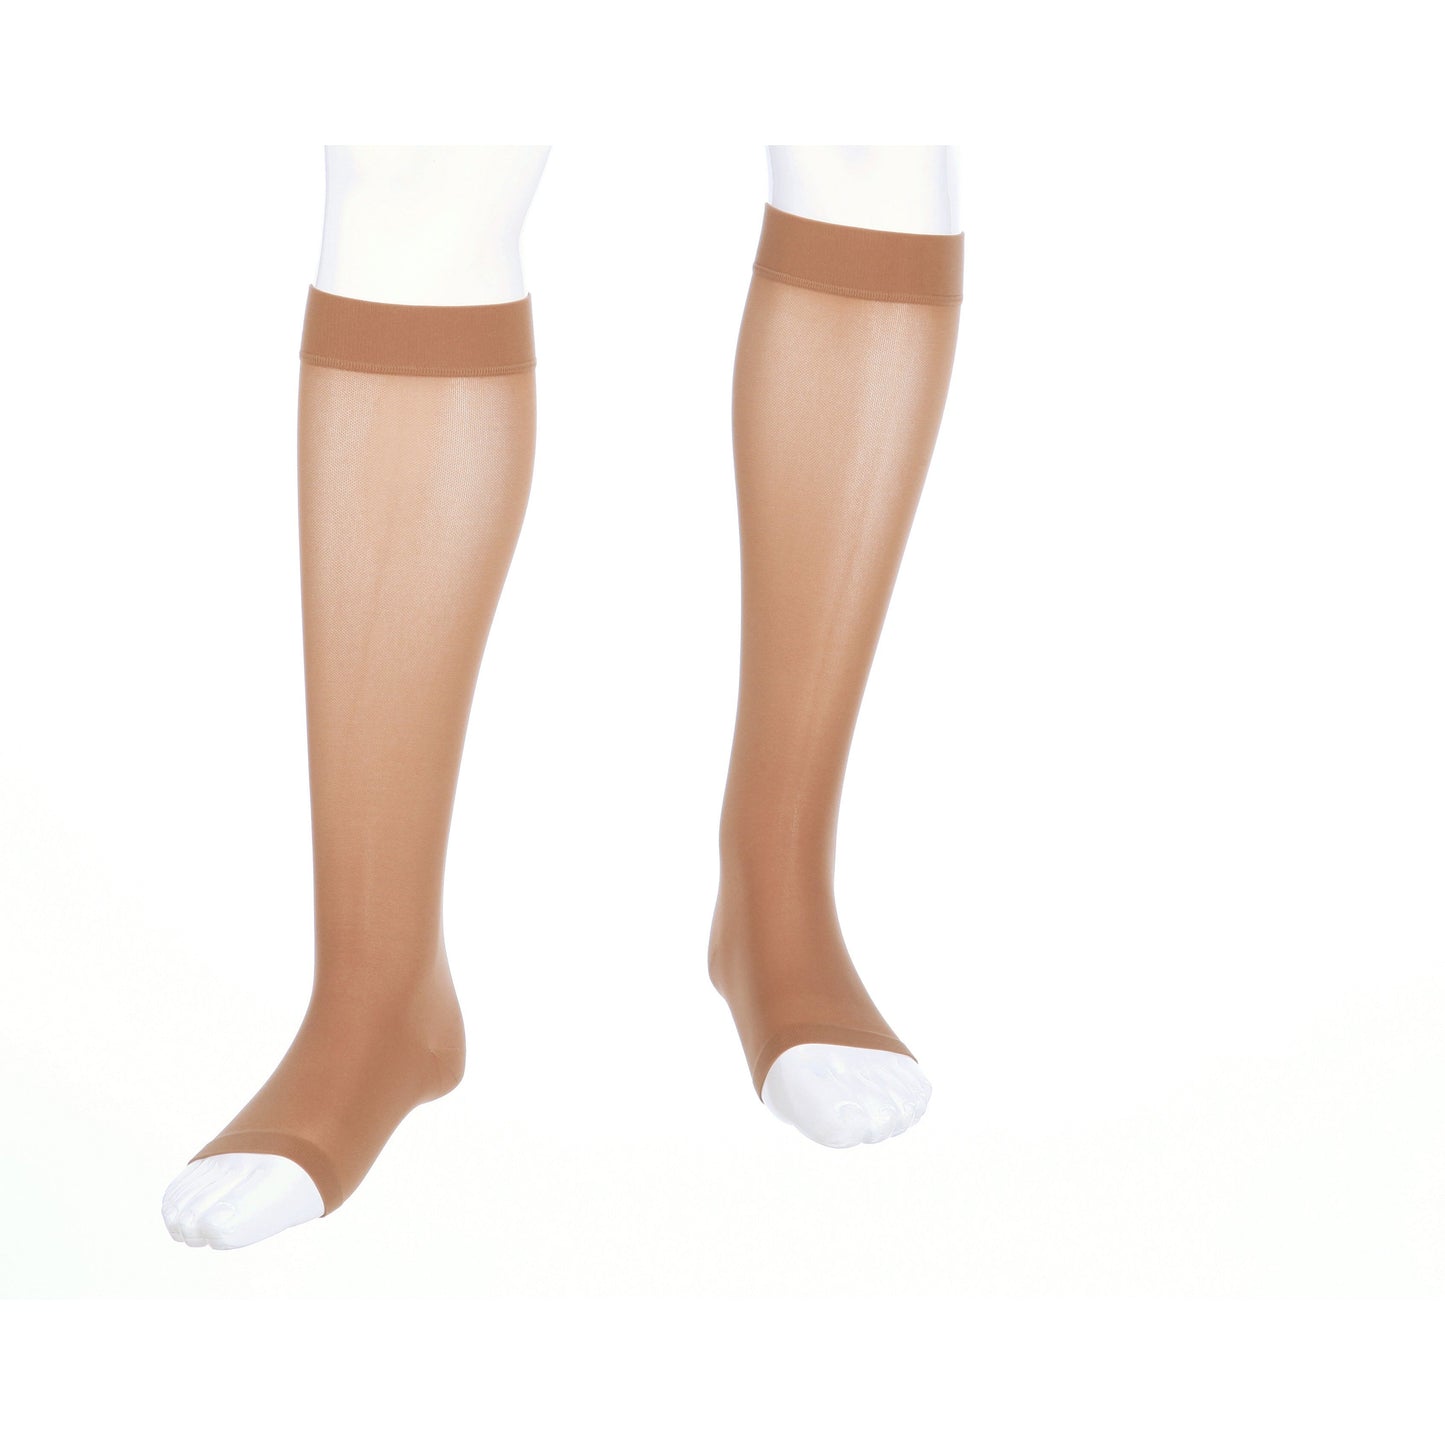 Medi Assure Knee High 30-40 mmHg, Open Toe [OVERSTOCK]